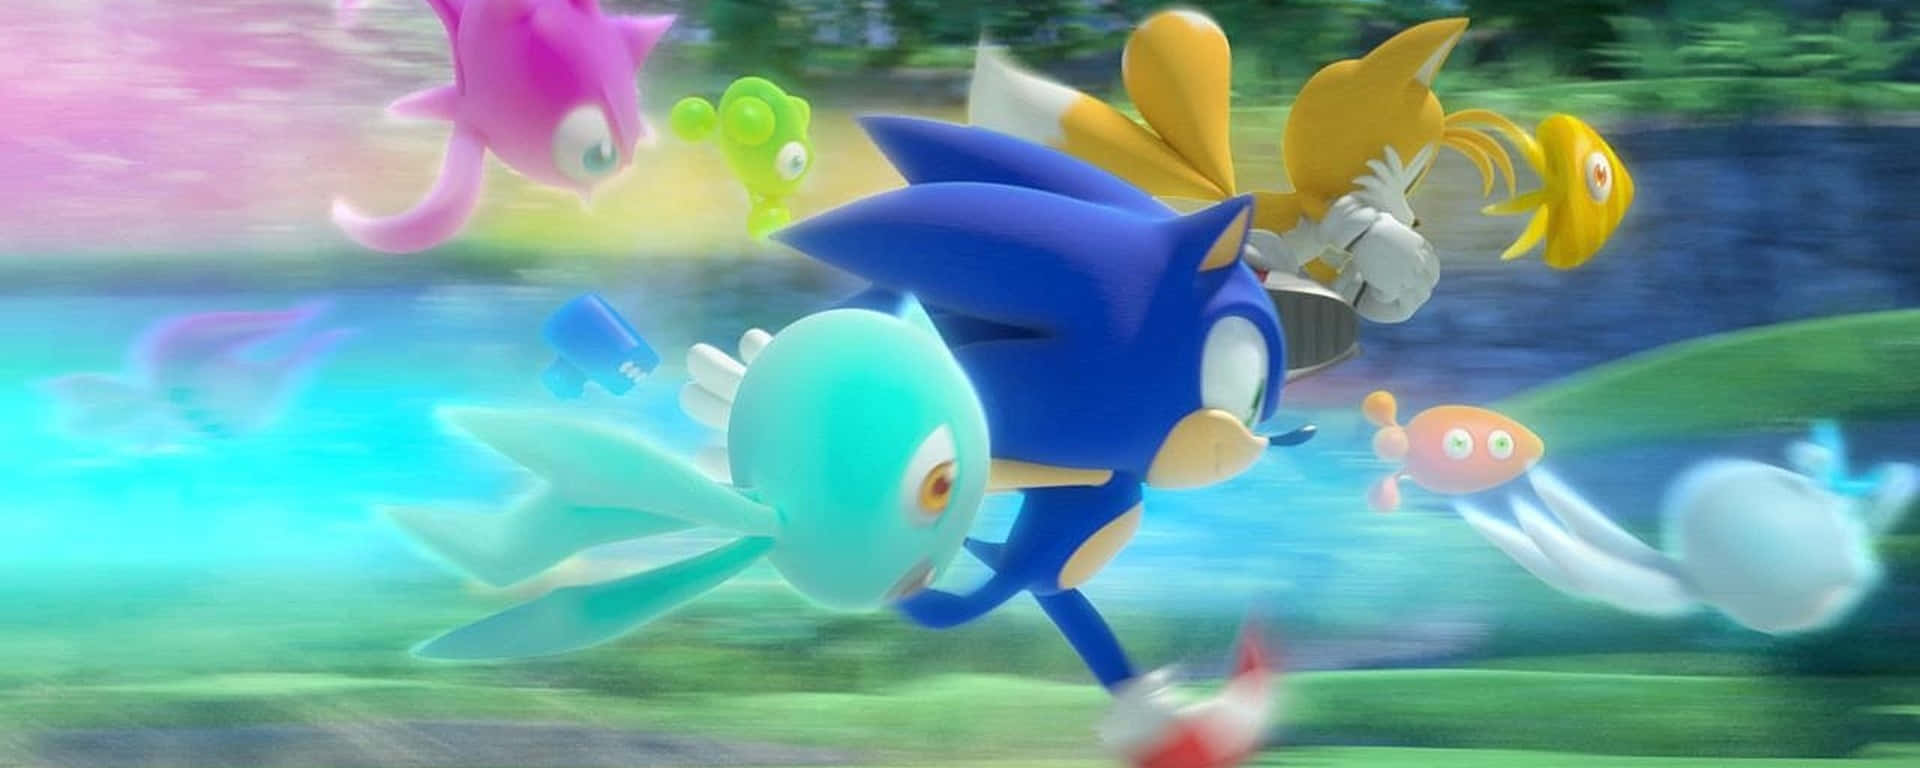 Sonic the Hedgehog og hans venner løber i græsset. Wallpaper